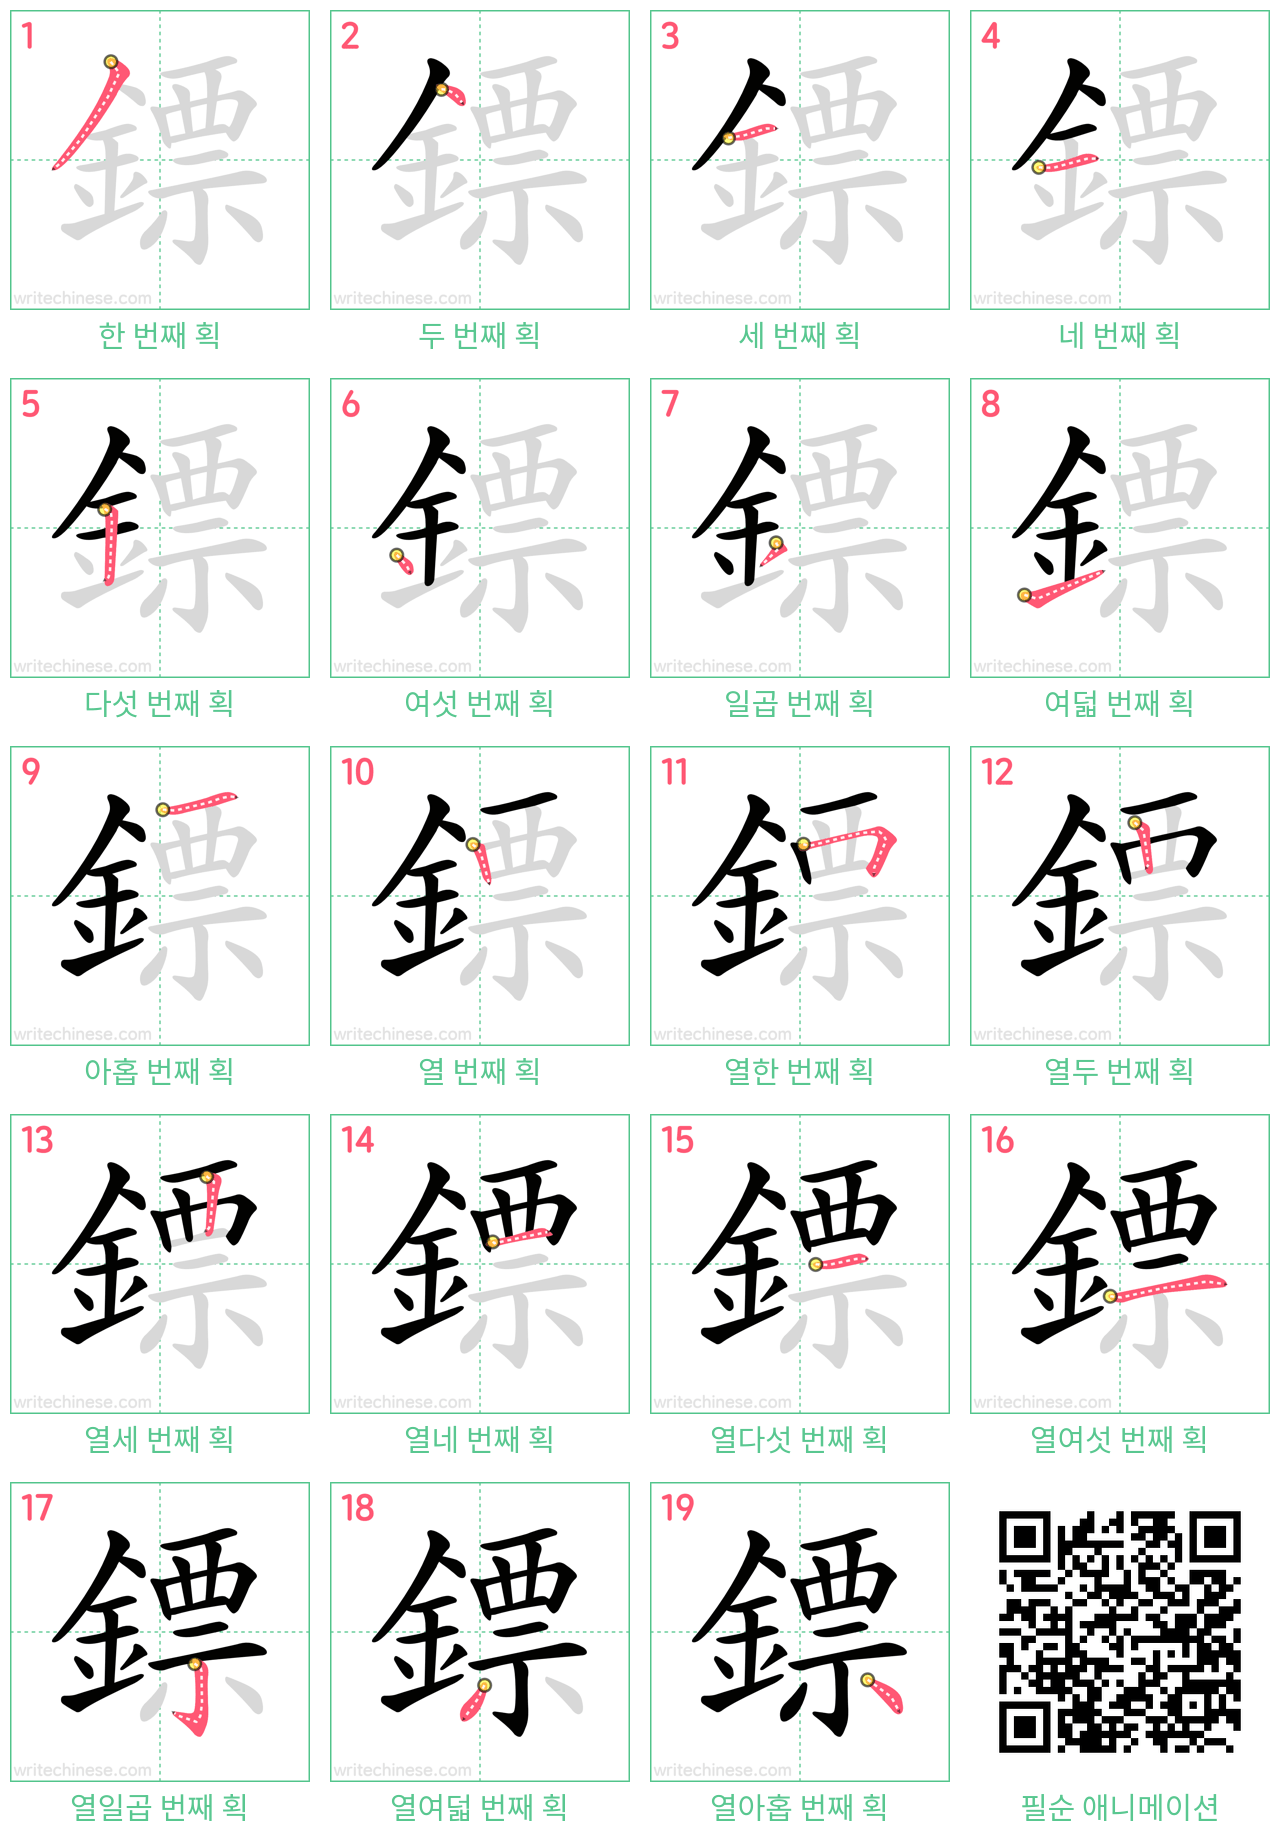 鏢 step-by-step stroke order diagrams